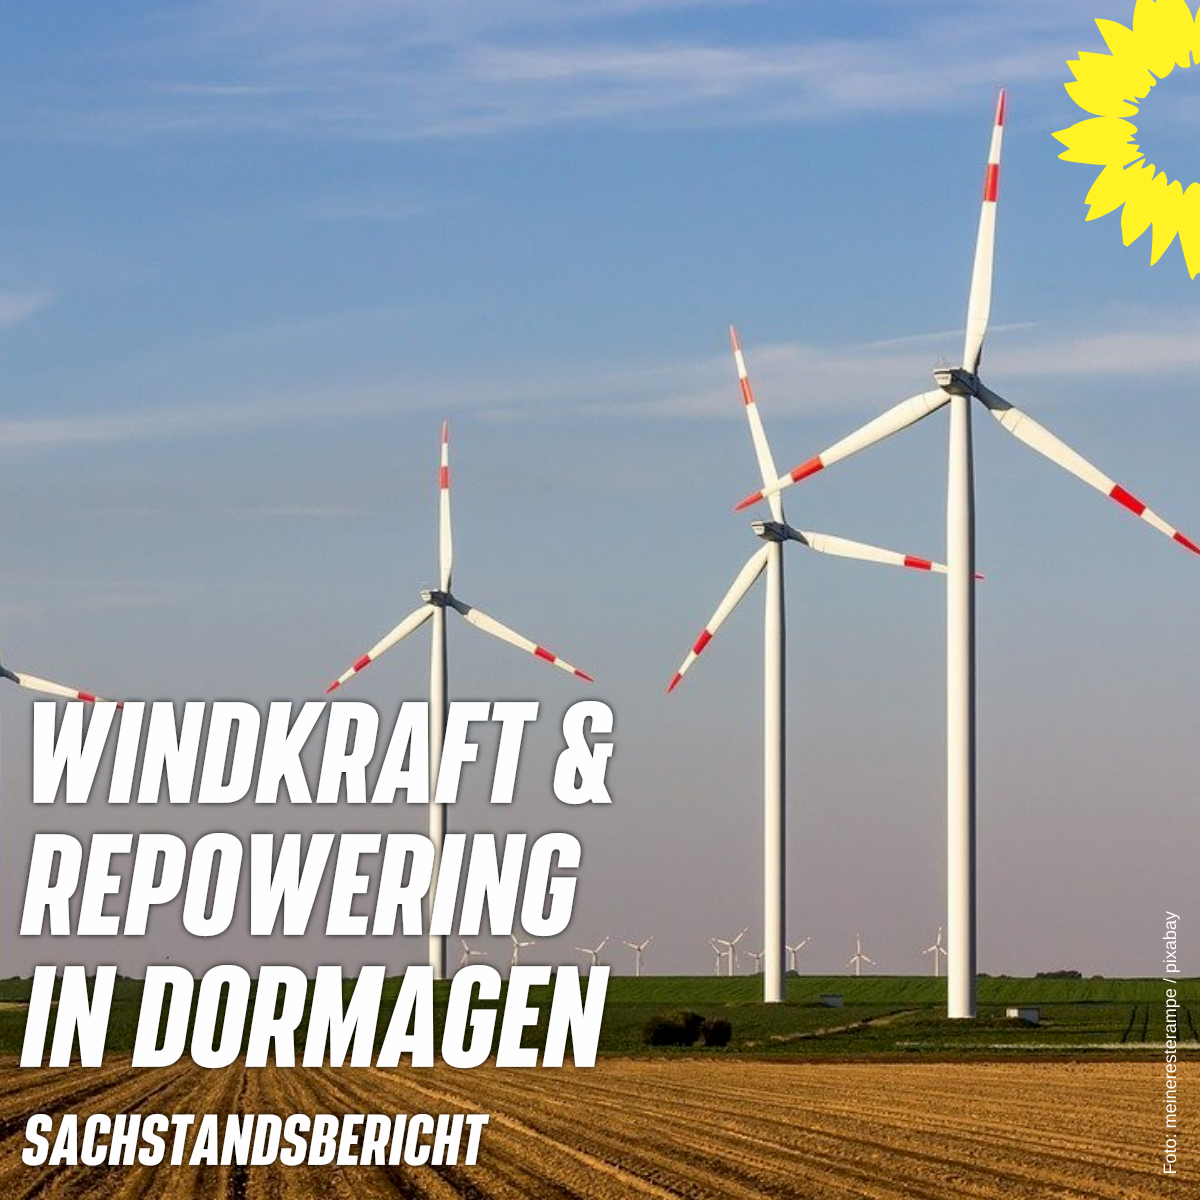 3 Windräder im Hintergund, Feld, Schriftzug: "Windkraft & Repowering in Dormagen - Sachstandsbericht"